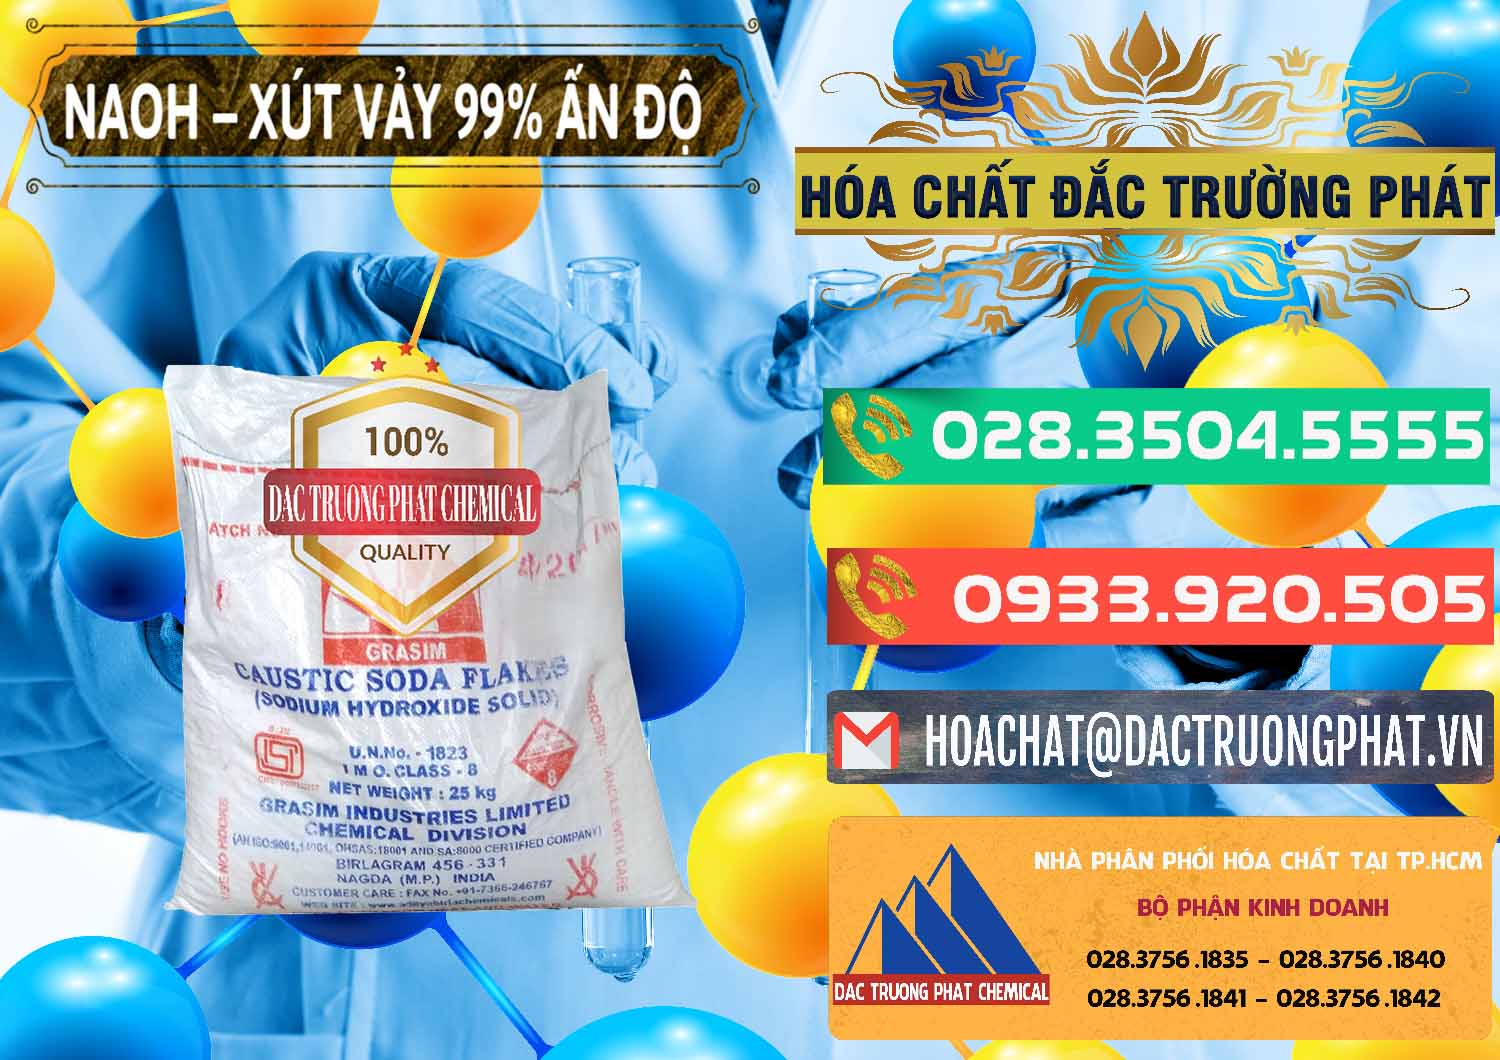 Chuyên cung ứng và bán Xút Vảy - NaOH Vảy 99% Aditya Birla Grasim Ấn Độ India - 0171 - Đơn vị cung cấp và nhập khẩu hóa chất tại TP.HCM - congtyhoachat.com.vn